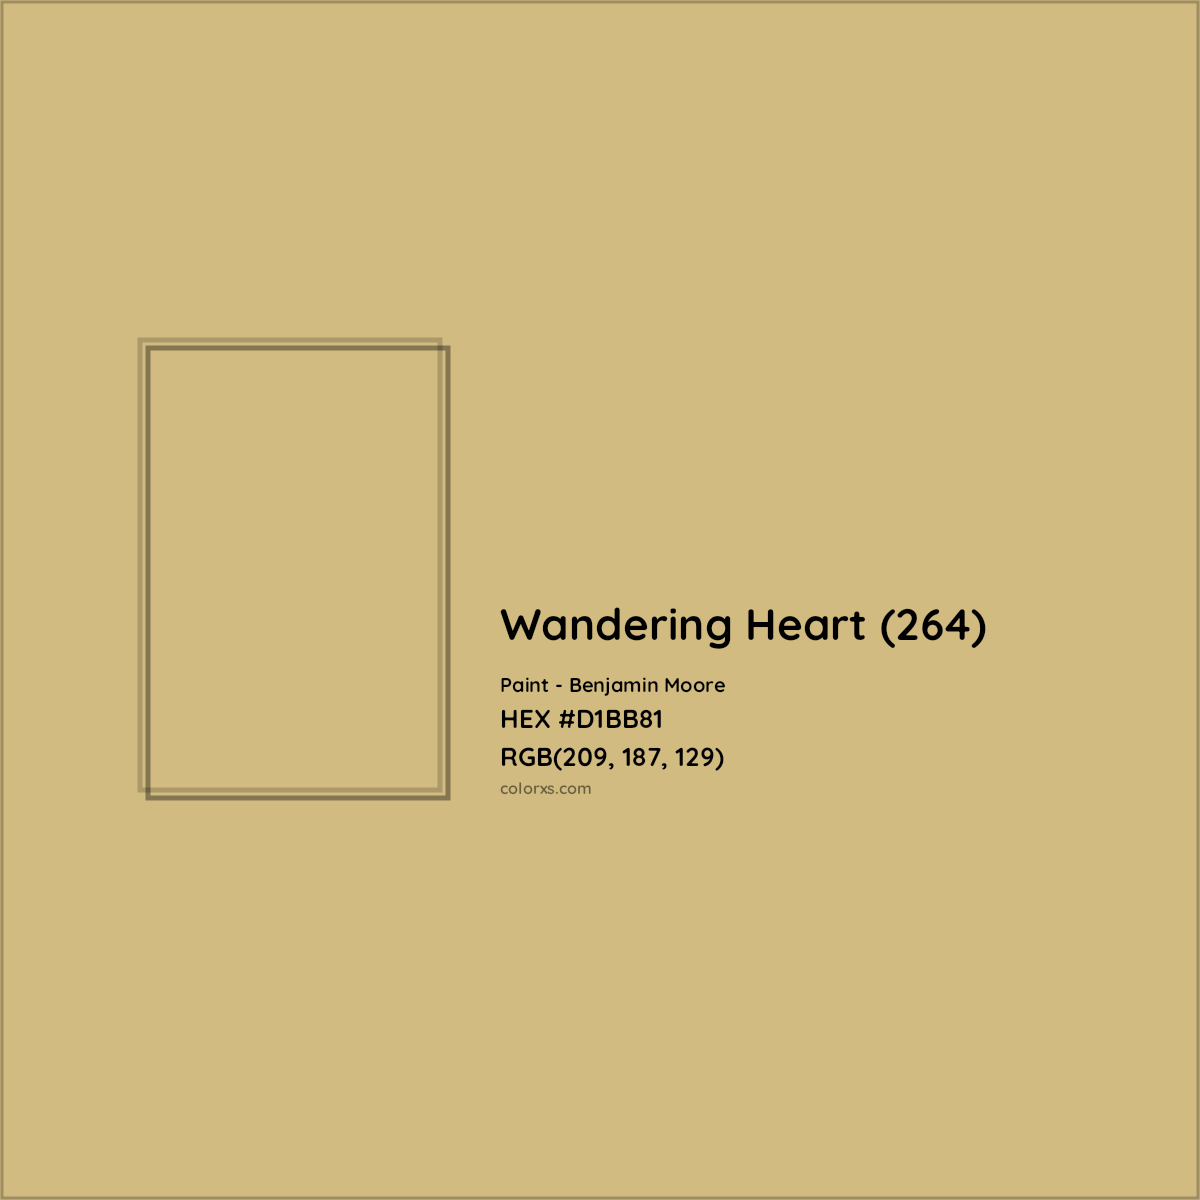 HEX #D1BB81 Wandering Heart (264) Paint Benjamin Moore - Color Code